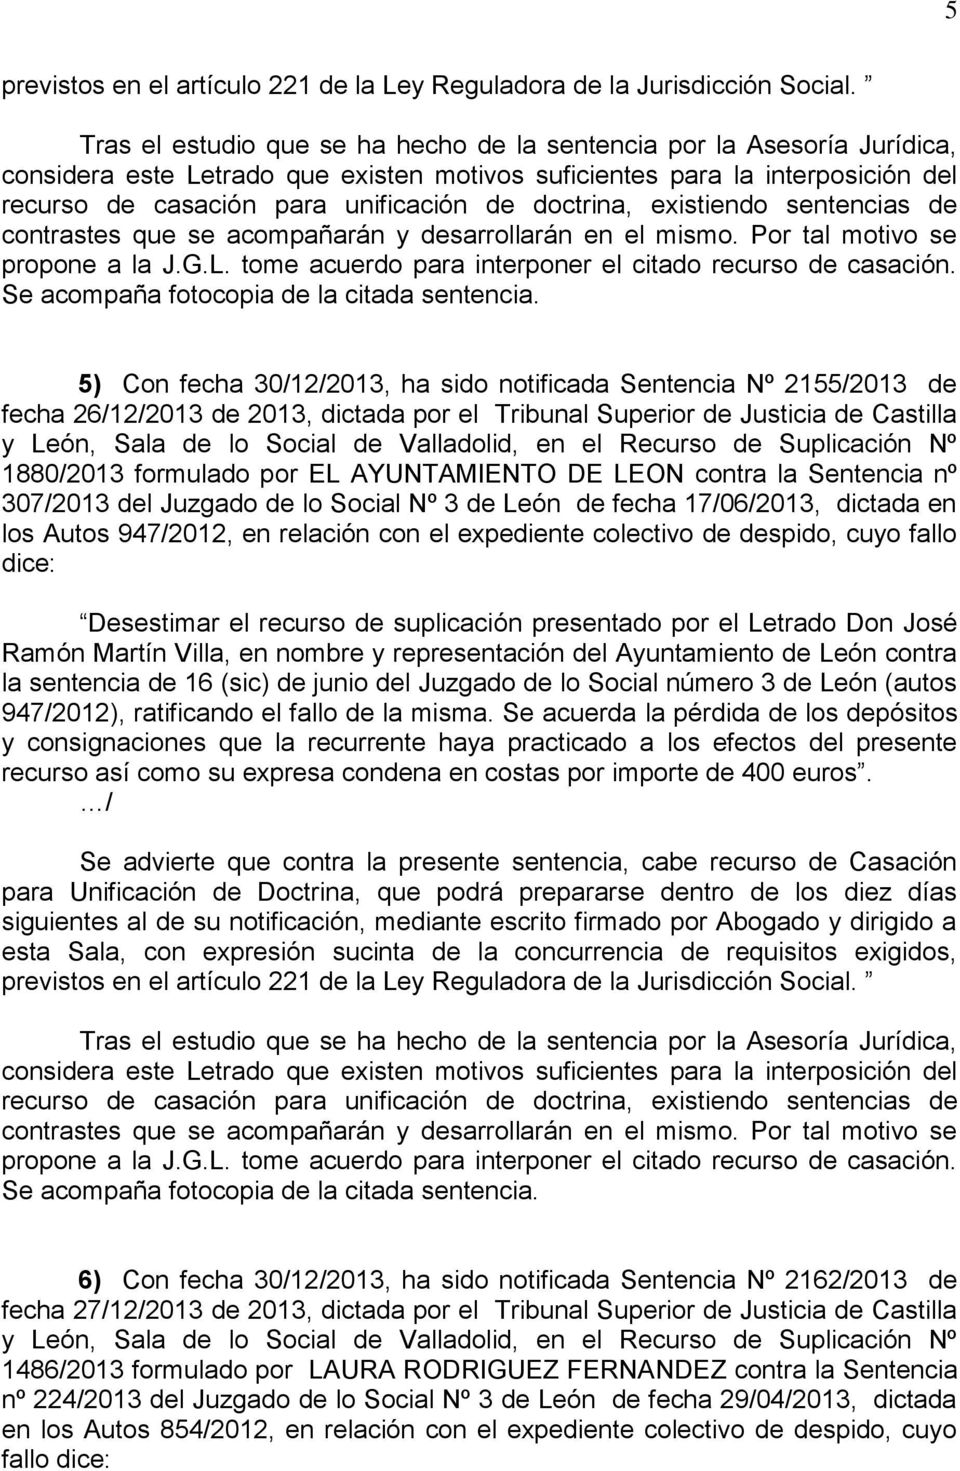 Desestimar el recurso de suplicación presentado por el Letrado Don José Ramón Martín Villa, en nombre y representación del Ayuntamiento de León contra la sentencia de 16 (sic) de junio del Juzgado de